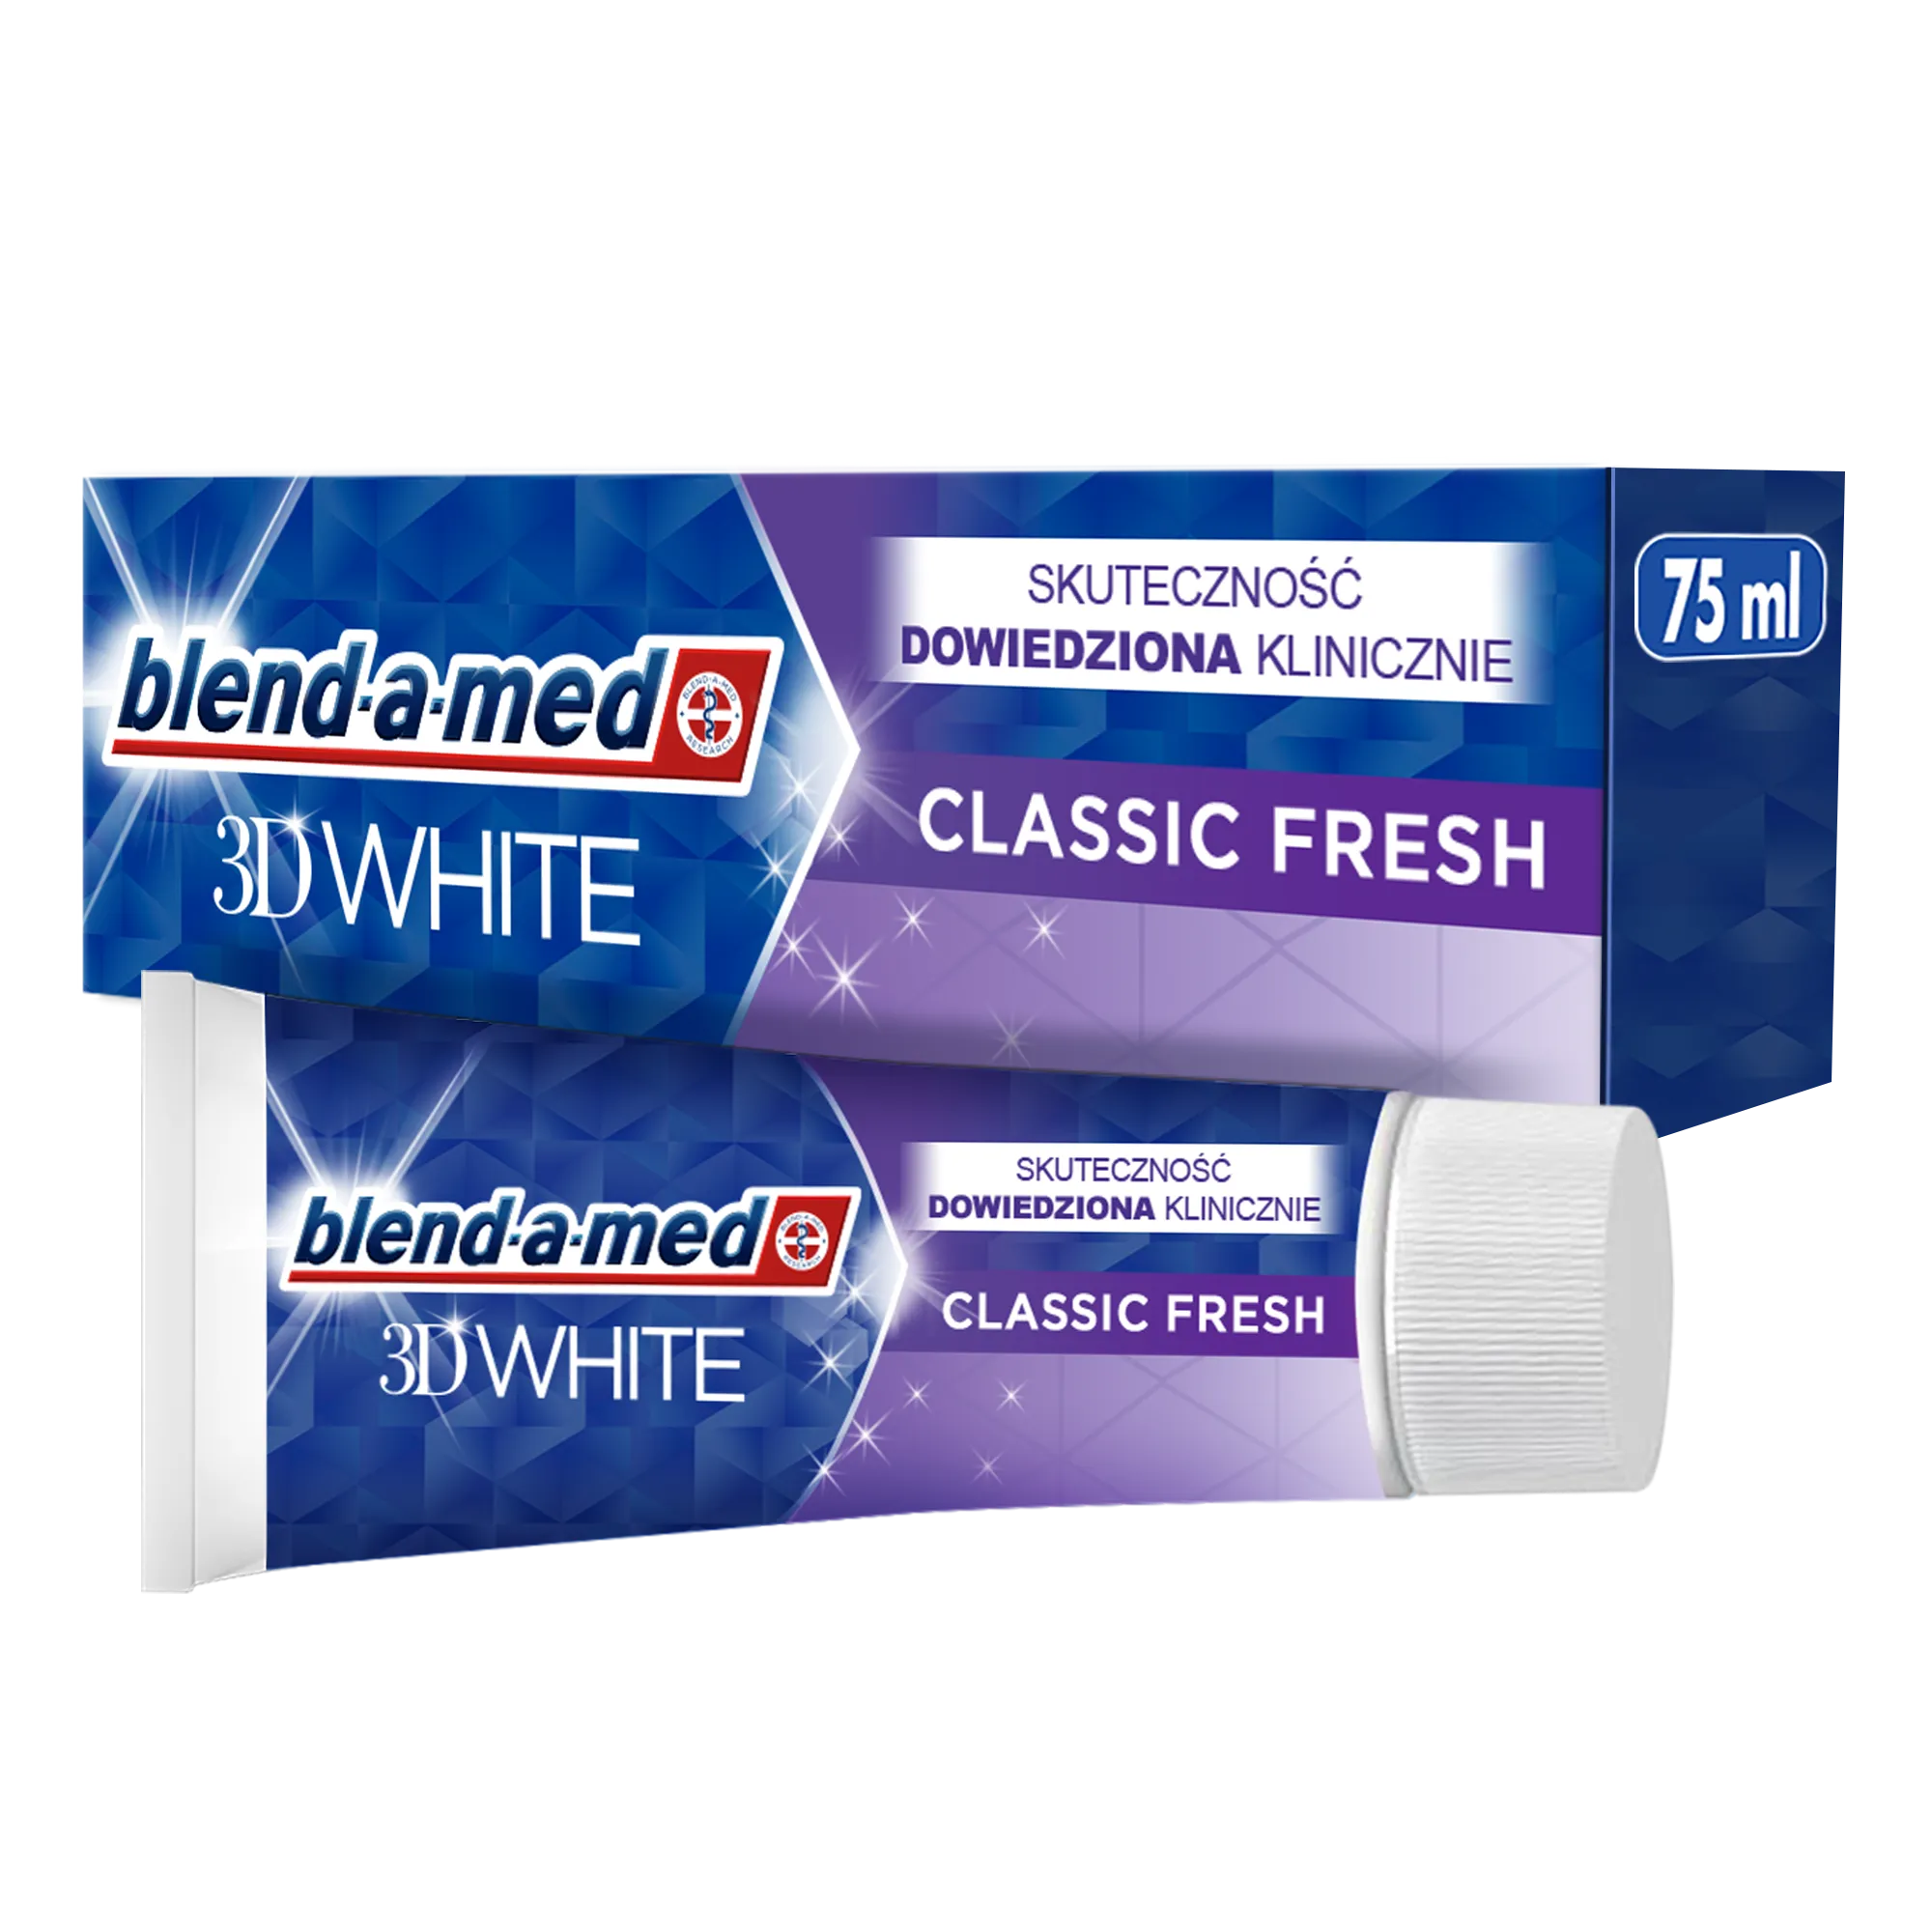 Blend-a-med 3D White wybielająca pasta do zębów, 75 ml